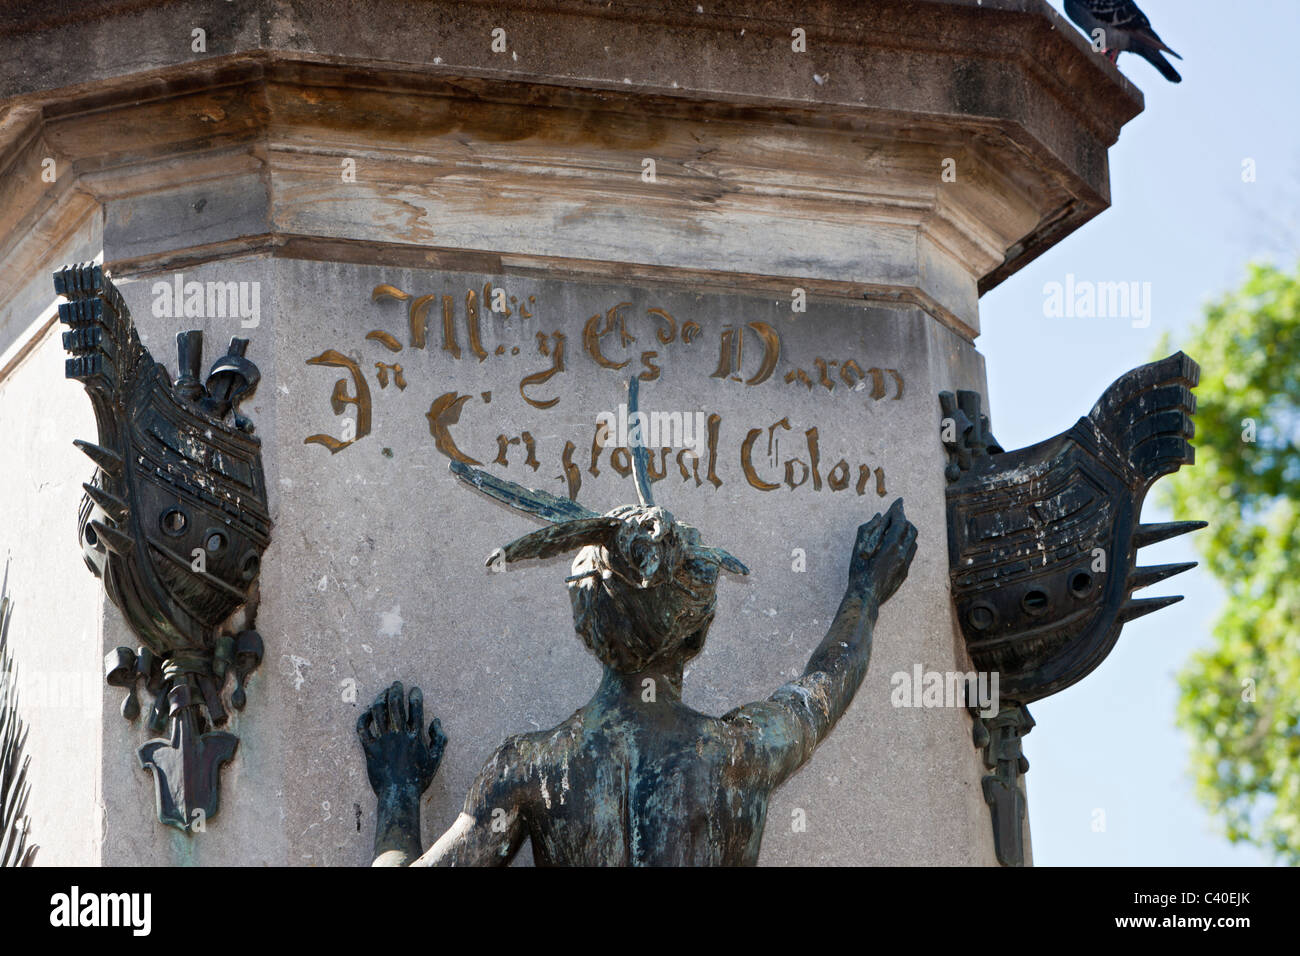 Detail of Columbus Memorial Statue at Plaza Colon, Santo Domingo, Dominican Republic Stock Photo